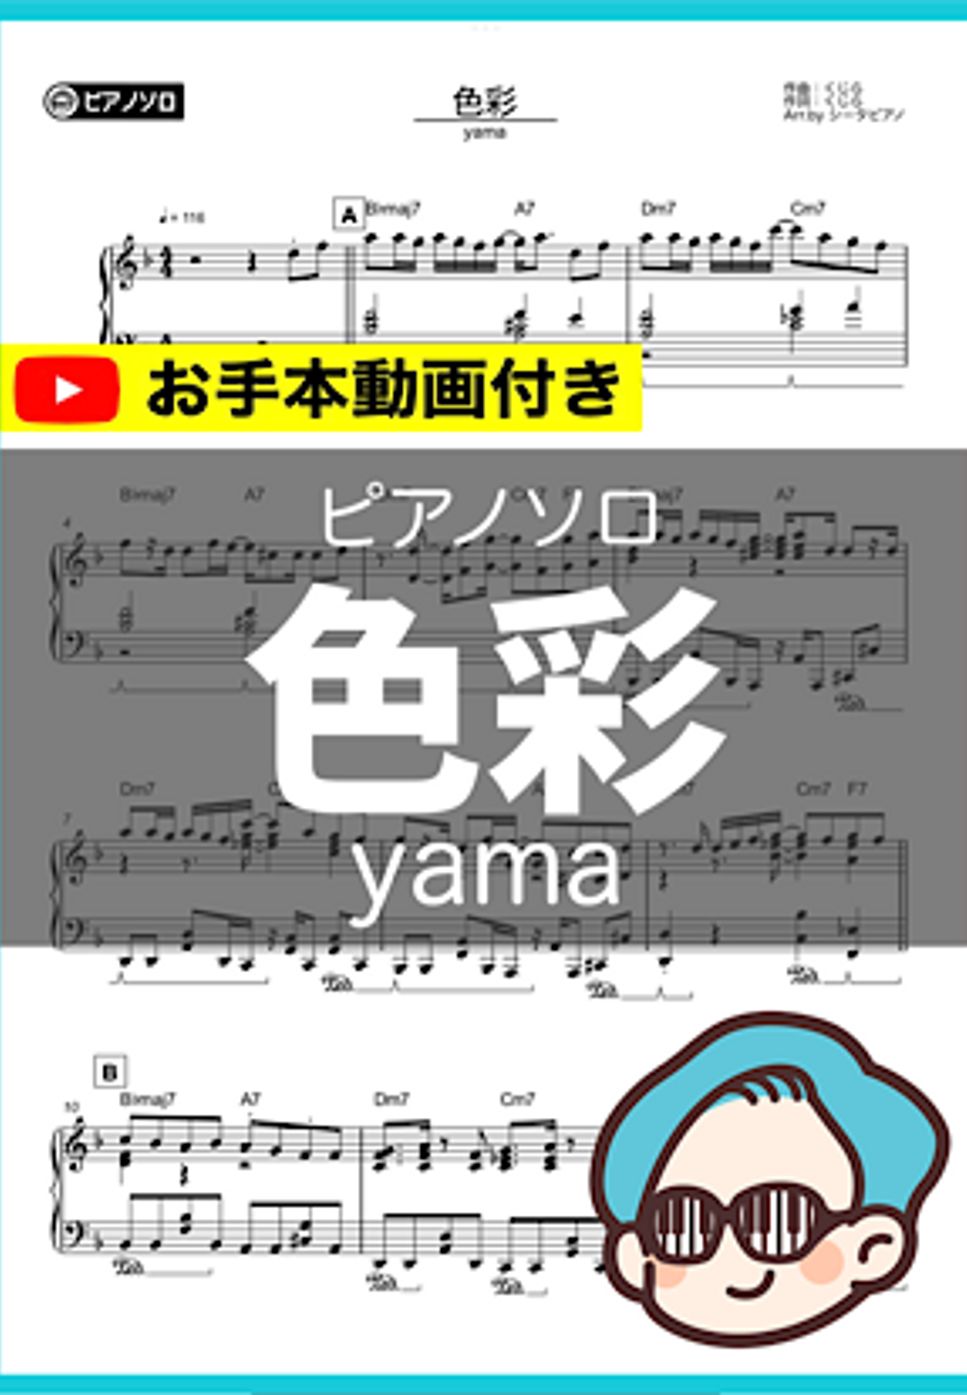 yama - 色彩 by シータピアノ